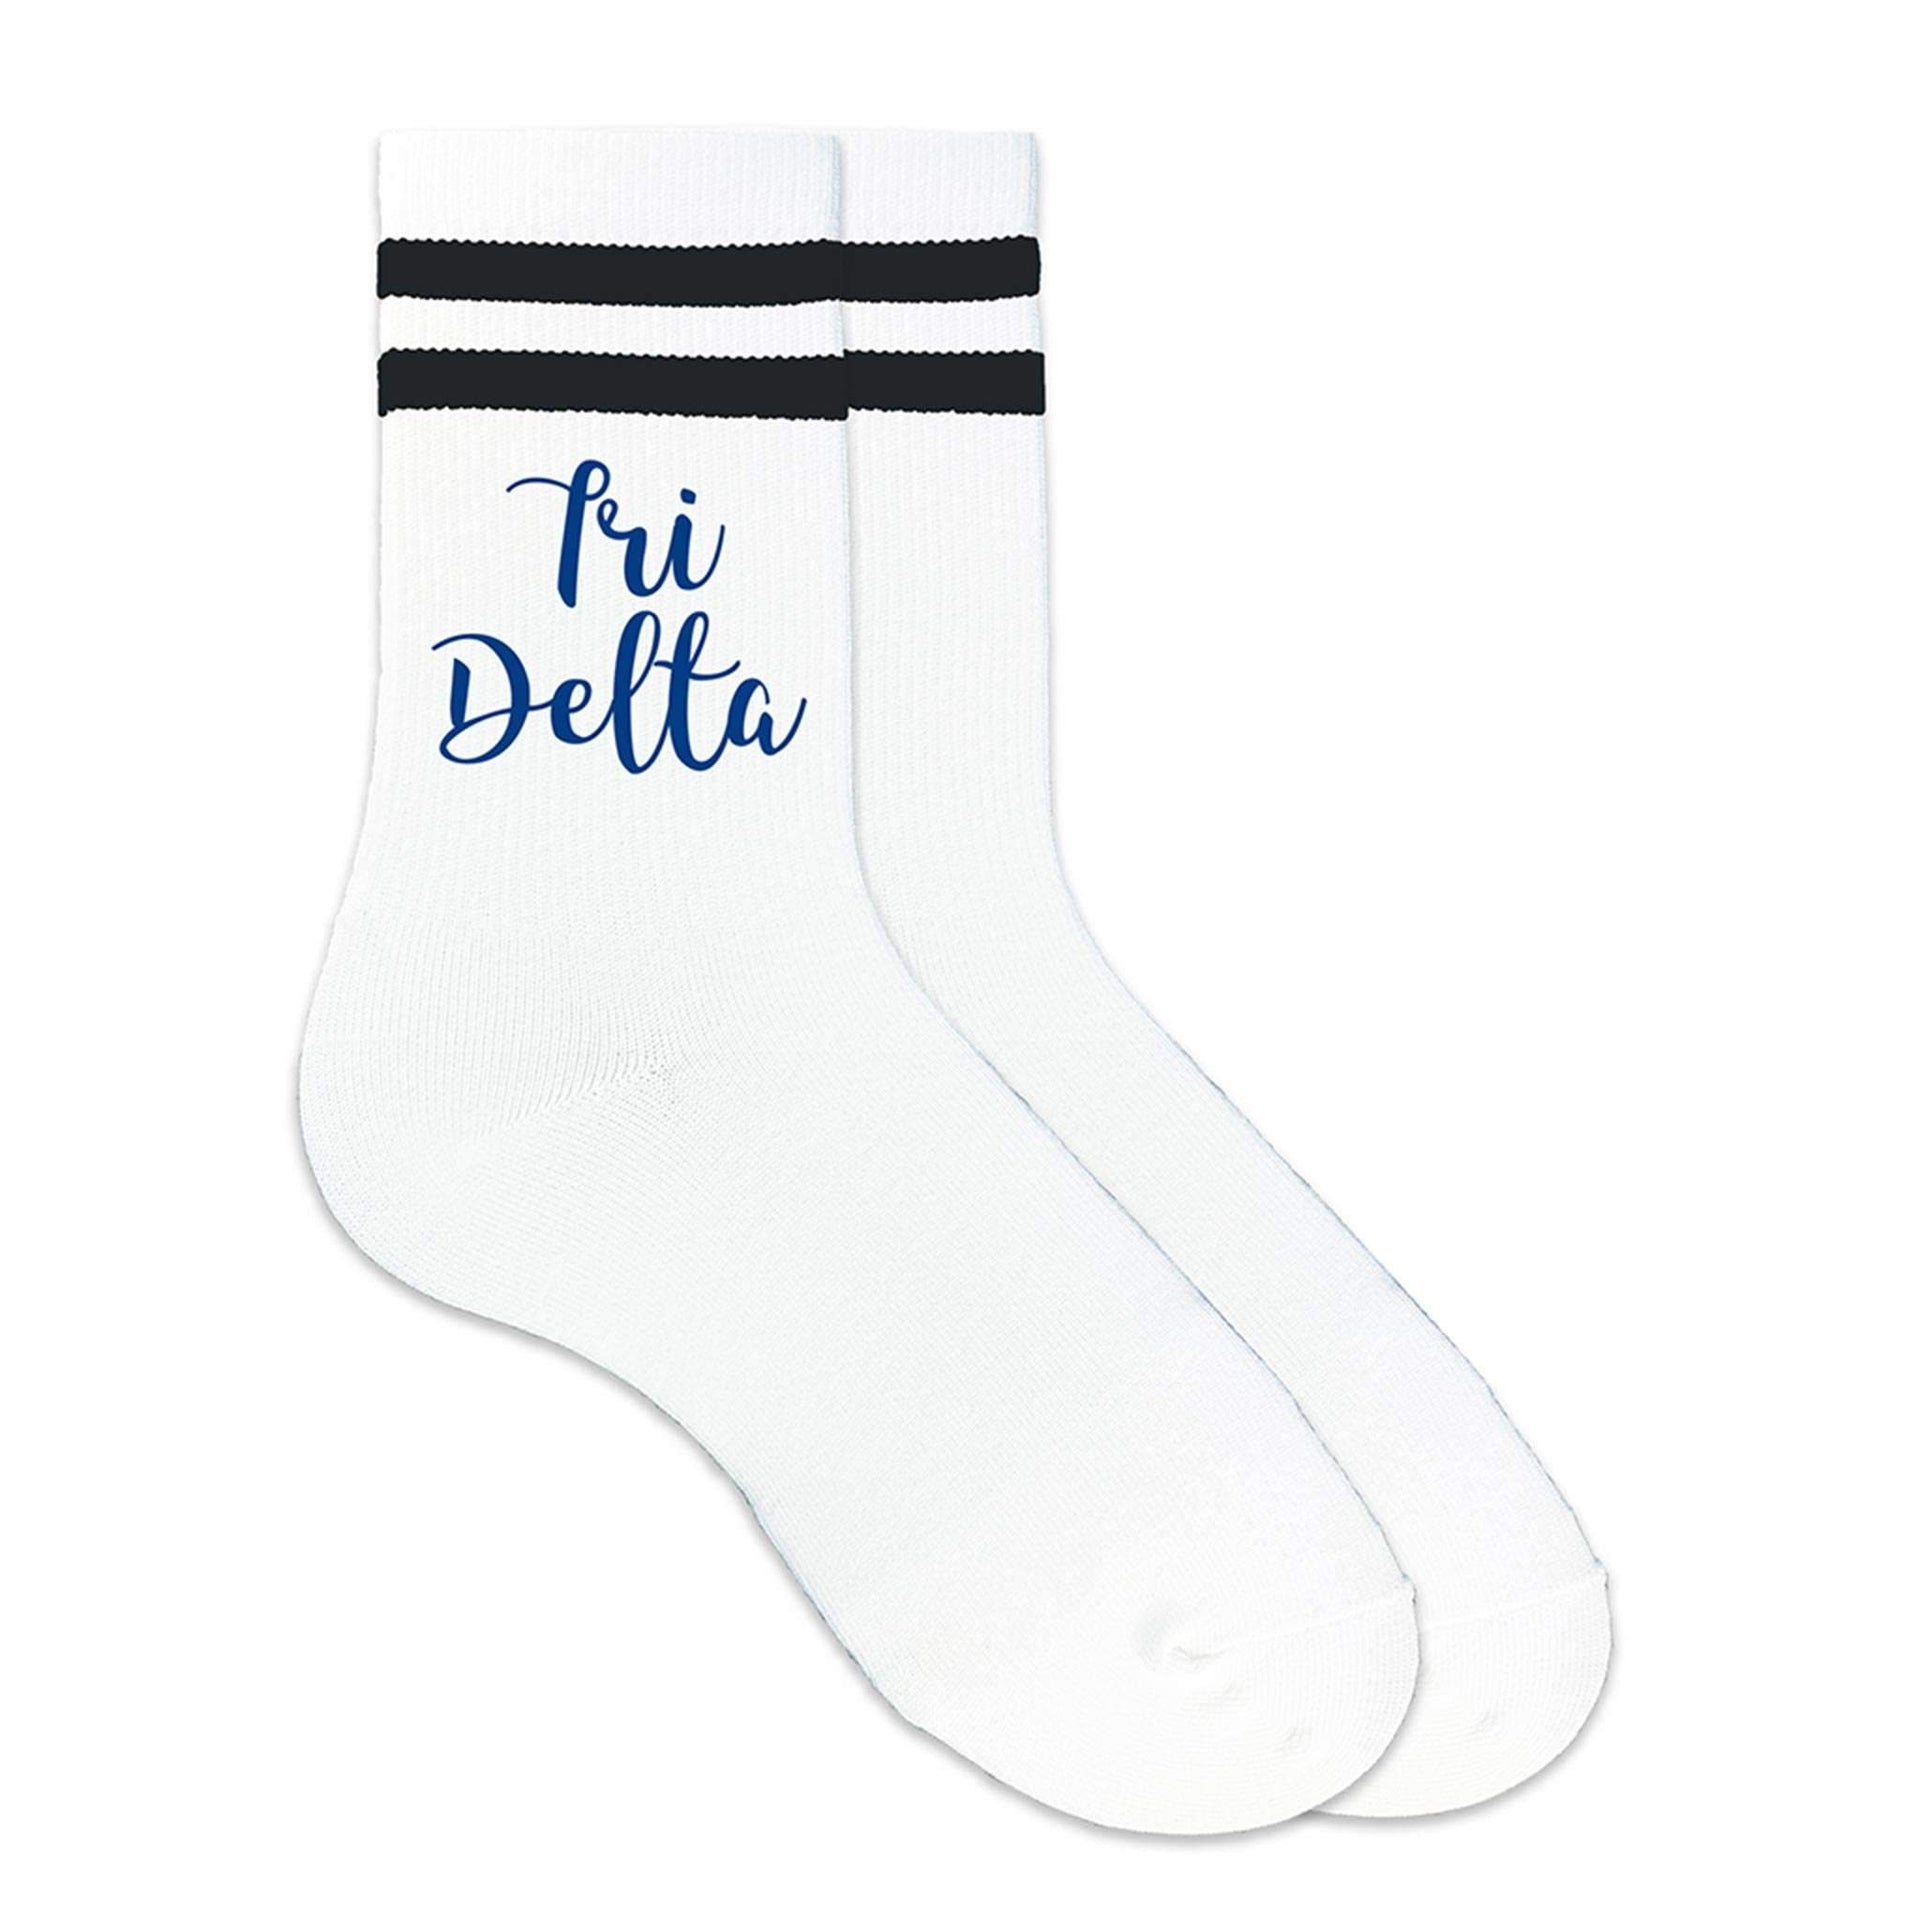 Tri Delta sorority nickname custom printed on striped crew socks